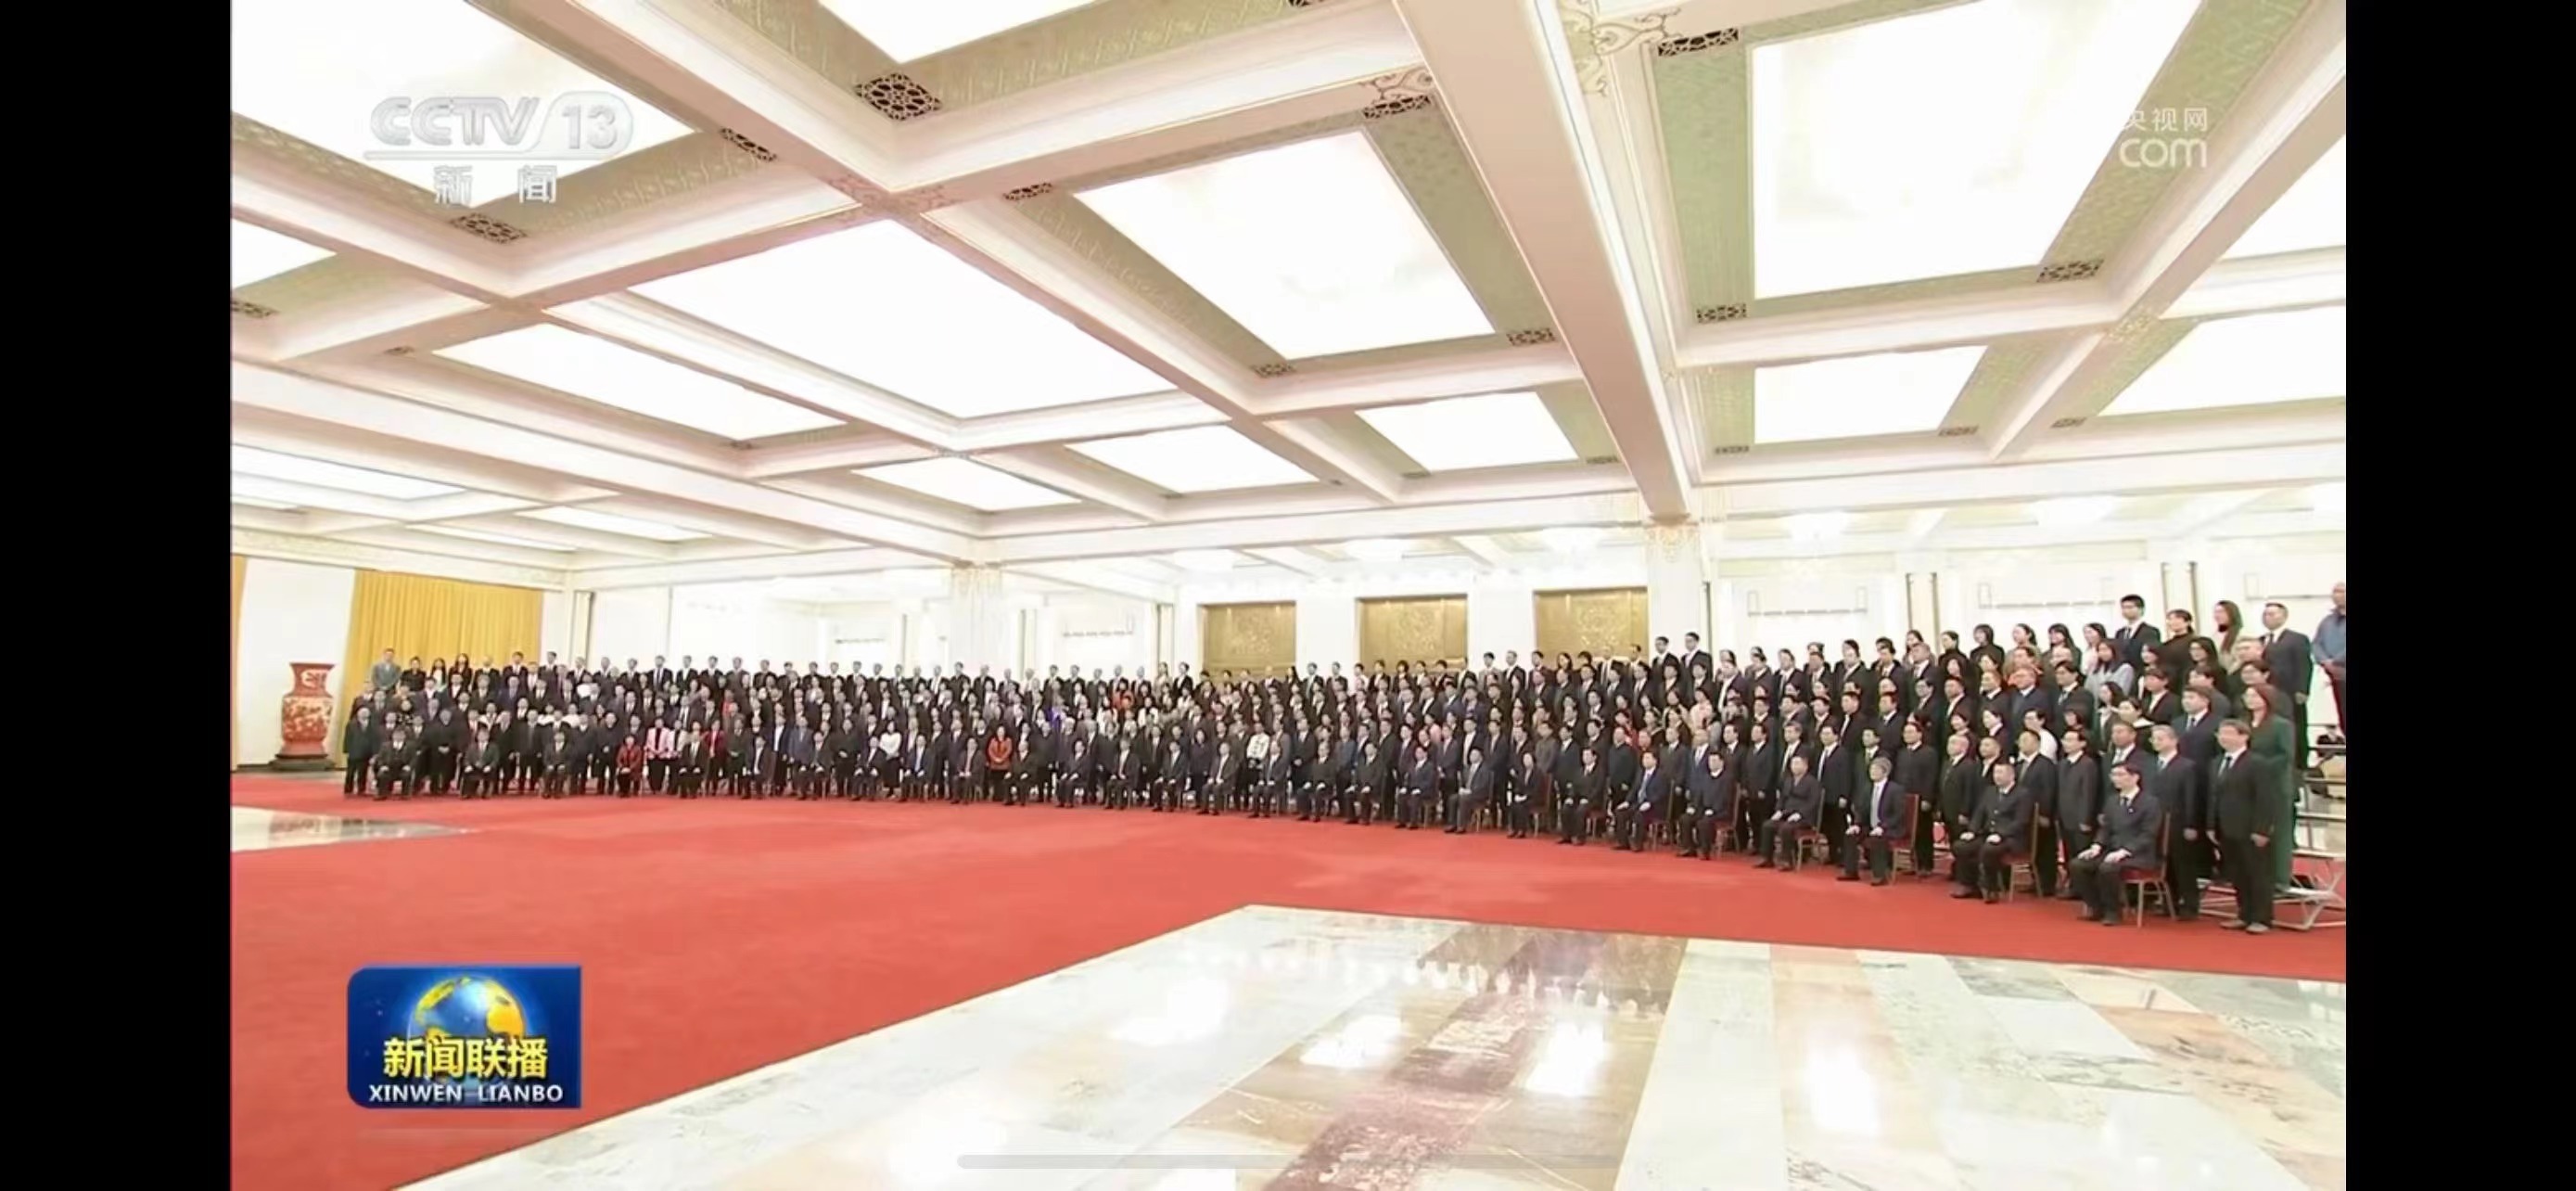 [视频]王沪宁会见中国基督教第十一次代表会议代表